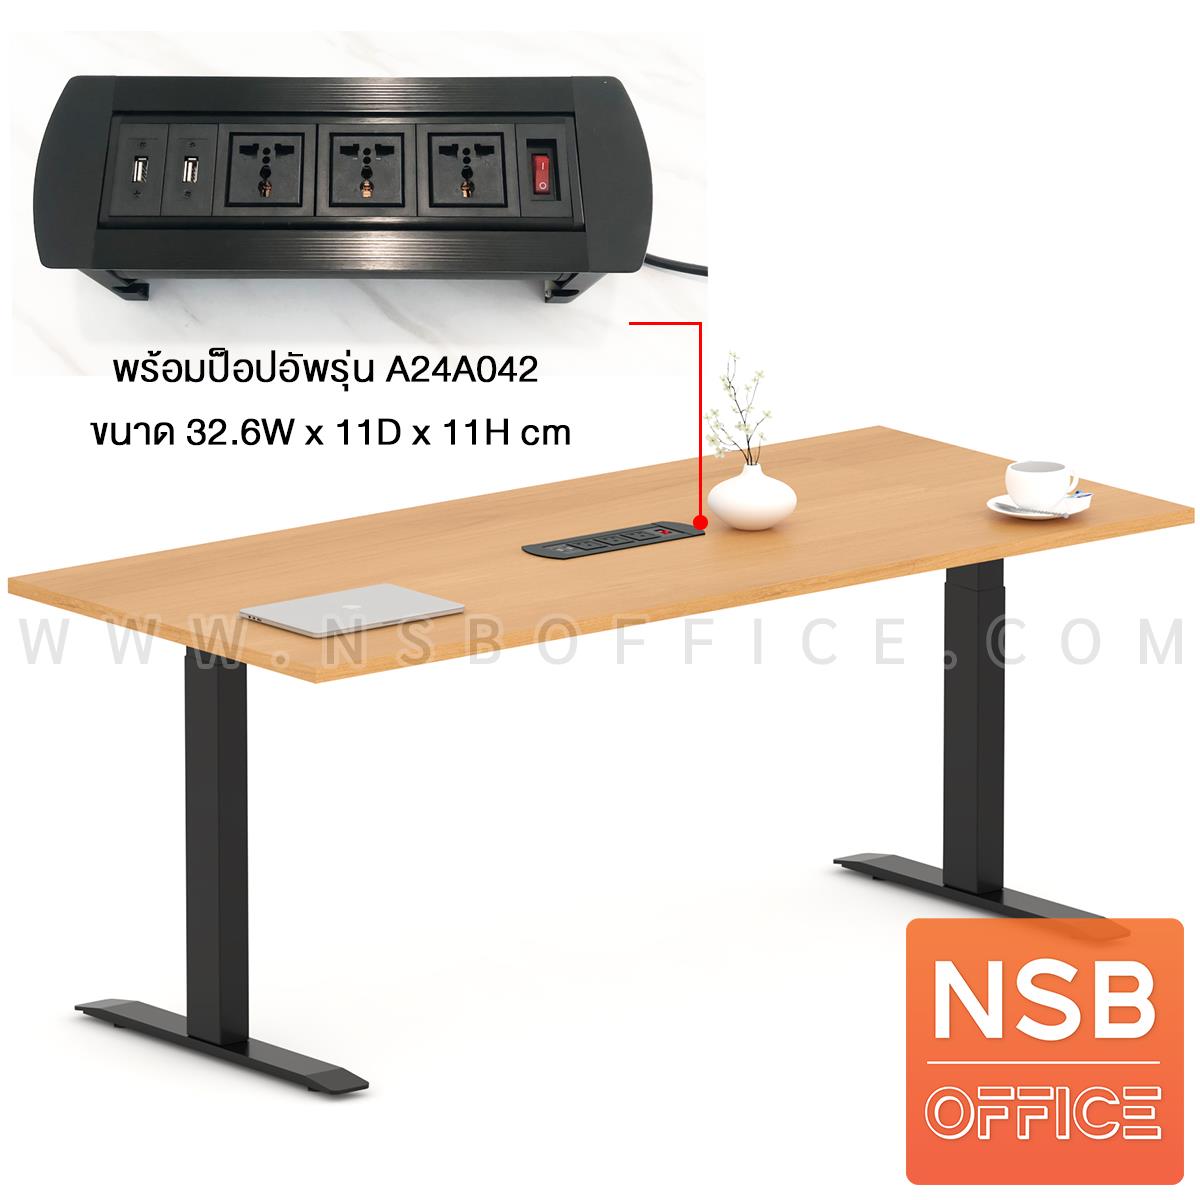 A05A236:โต๊ะประชุมปรับระดับ ระบบไฟฟ้า รุ่น Dwell (ดเวล) ขนาด 180W*80D cm. ขาเหล็ก พร้อมป็อปอัพ A24A042